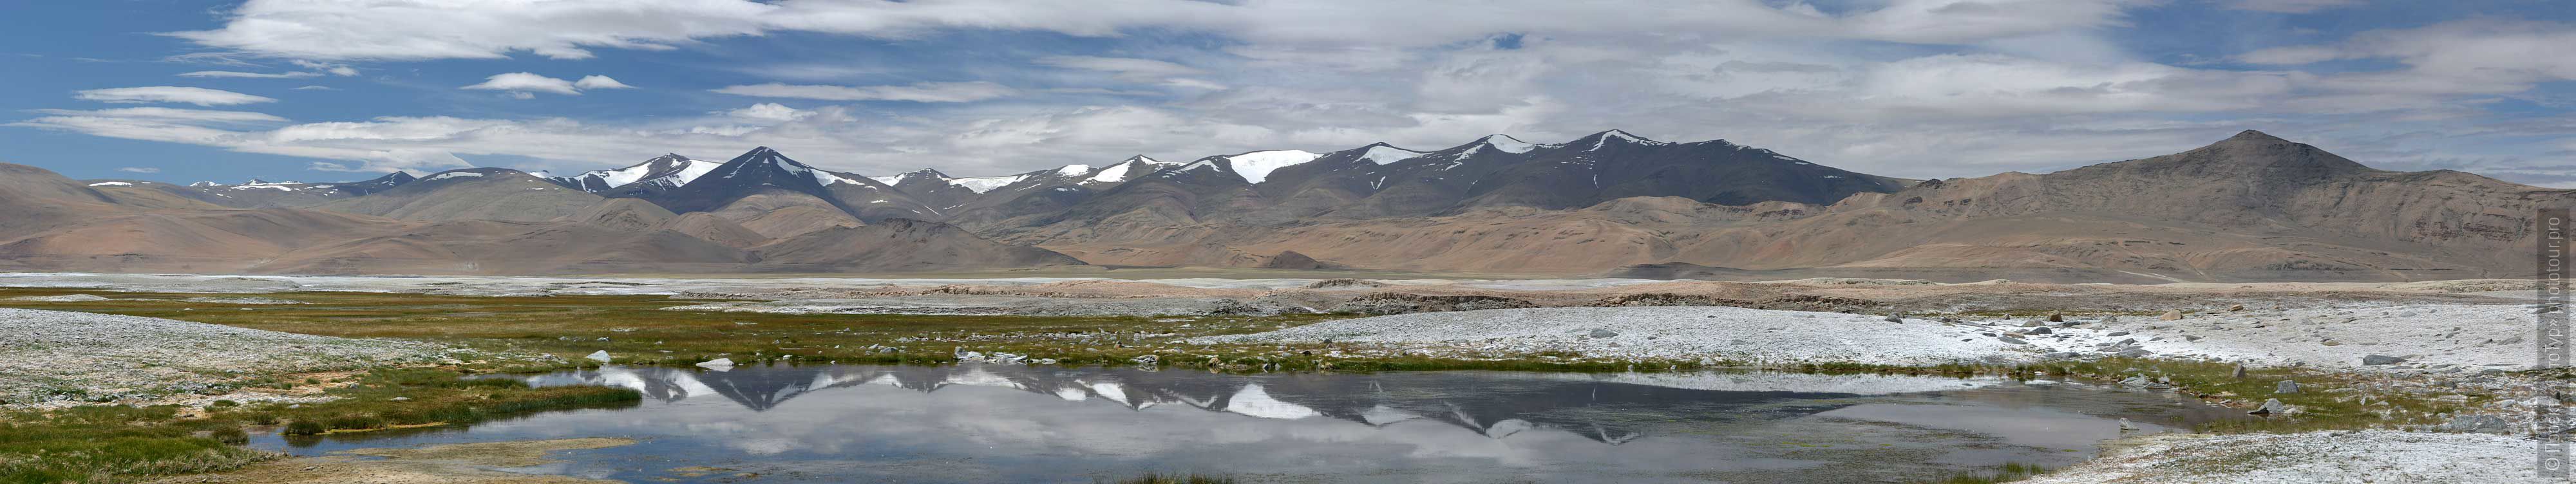 Lake Tso Kar, Ladakh. Tour Tibet Lakeside Advertising: Alpine lakes, geyser valley, Lamayuru, Colored Mountains, 01 - 10.09. 2023 year.